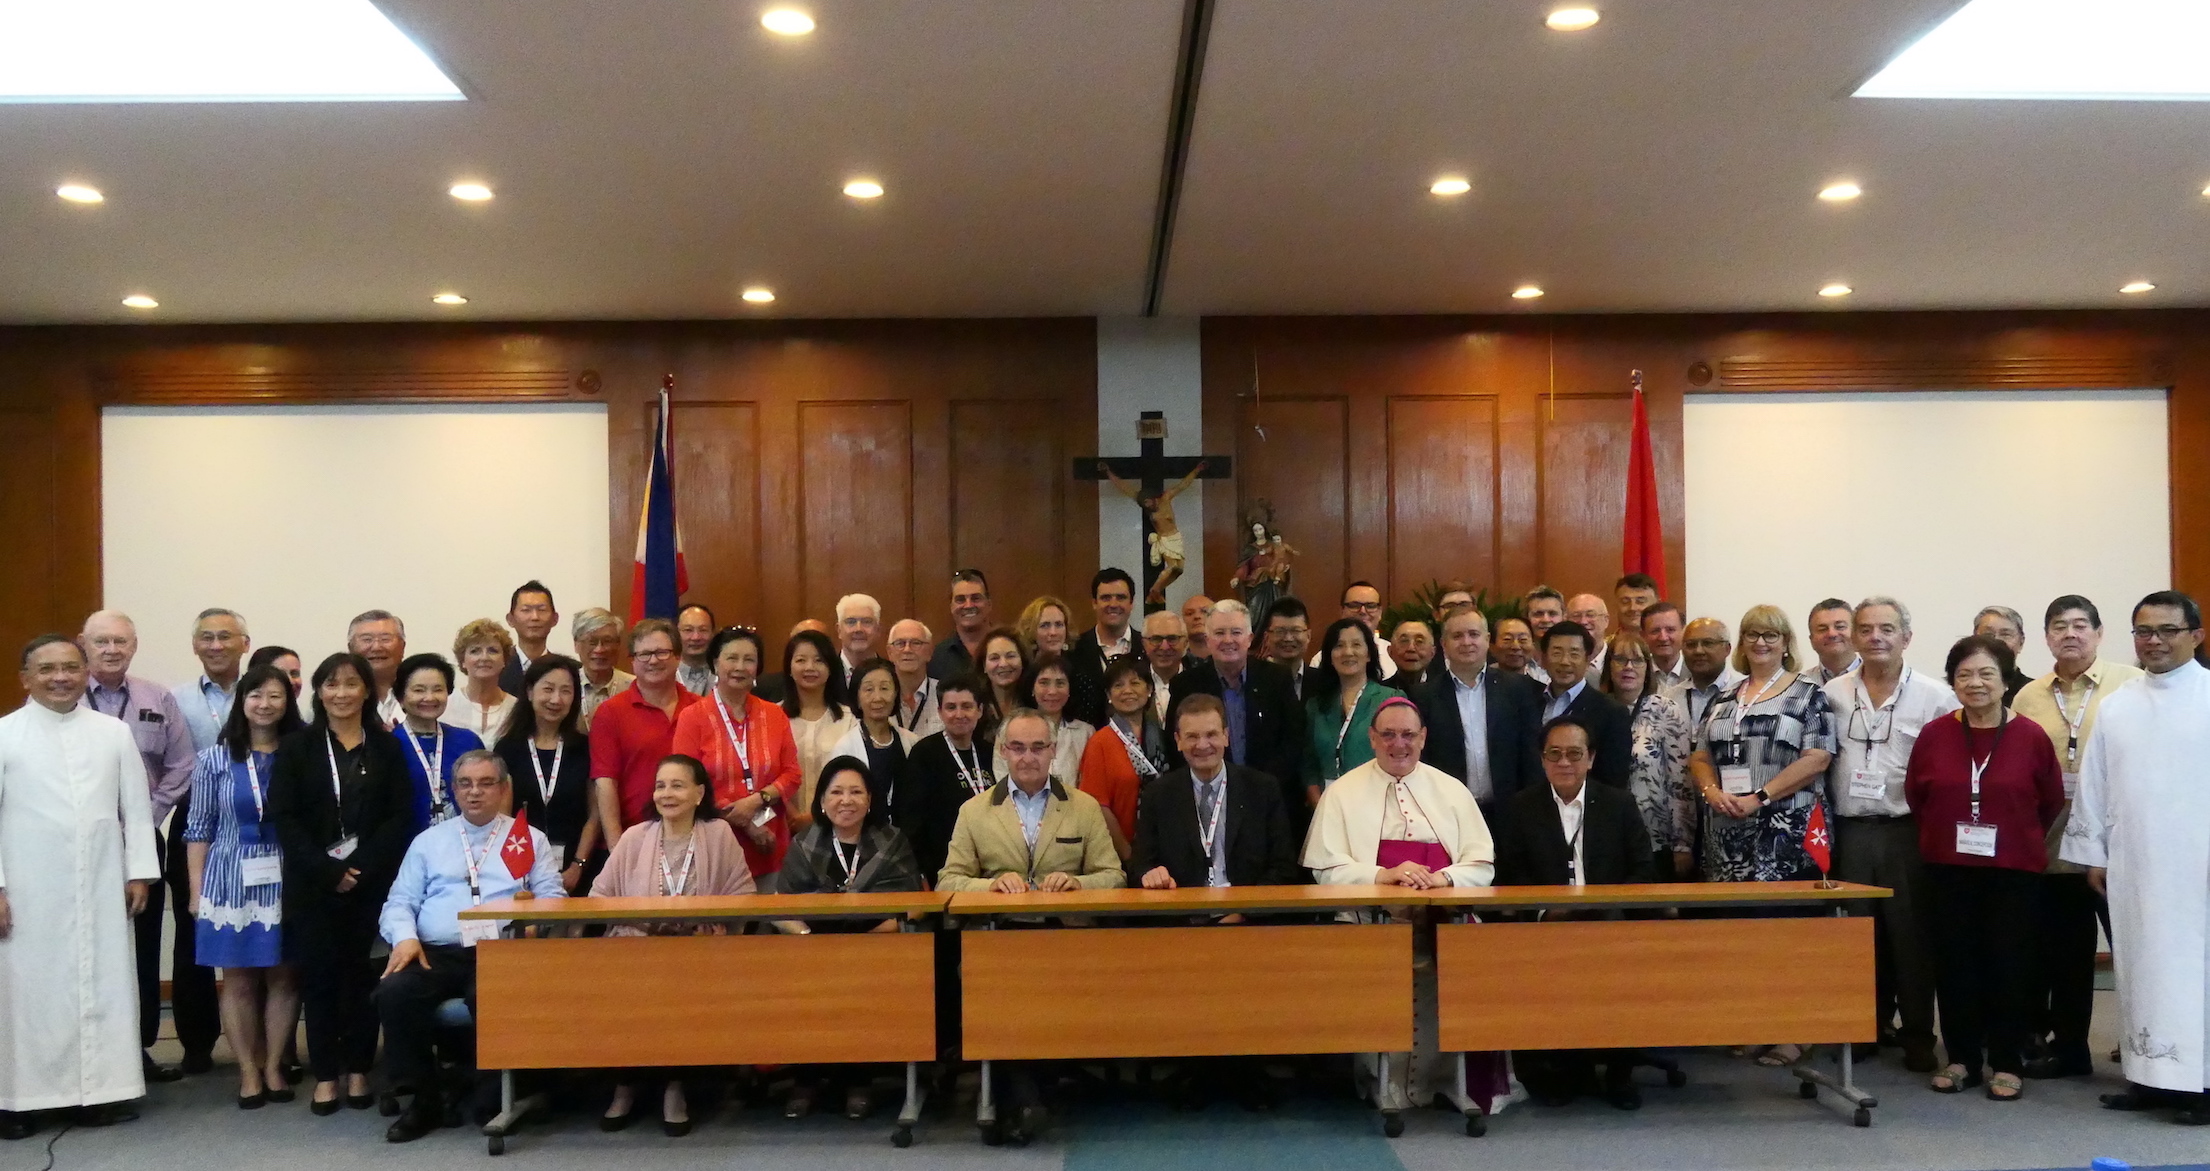 Huitième conférence Asie-Pacifique de l’Ordre de Malte